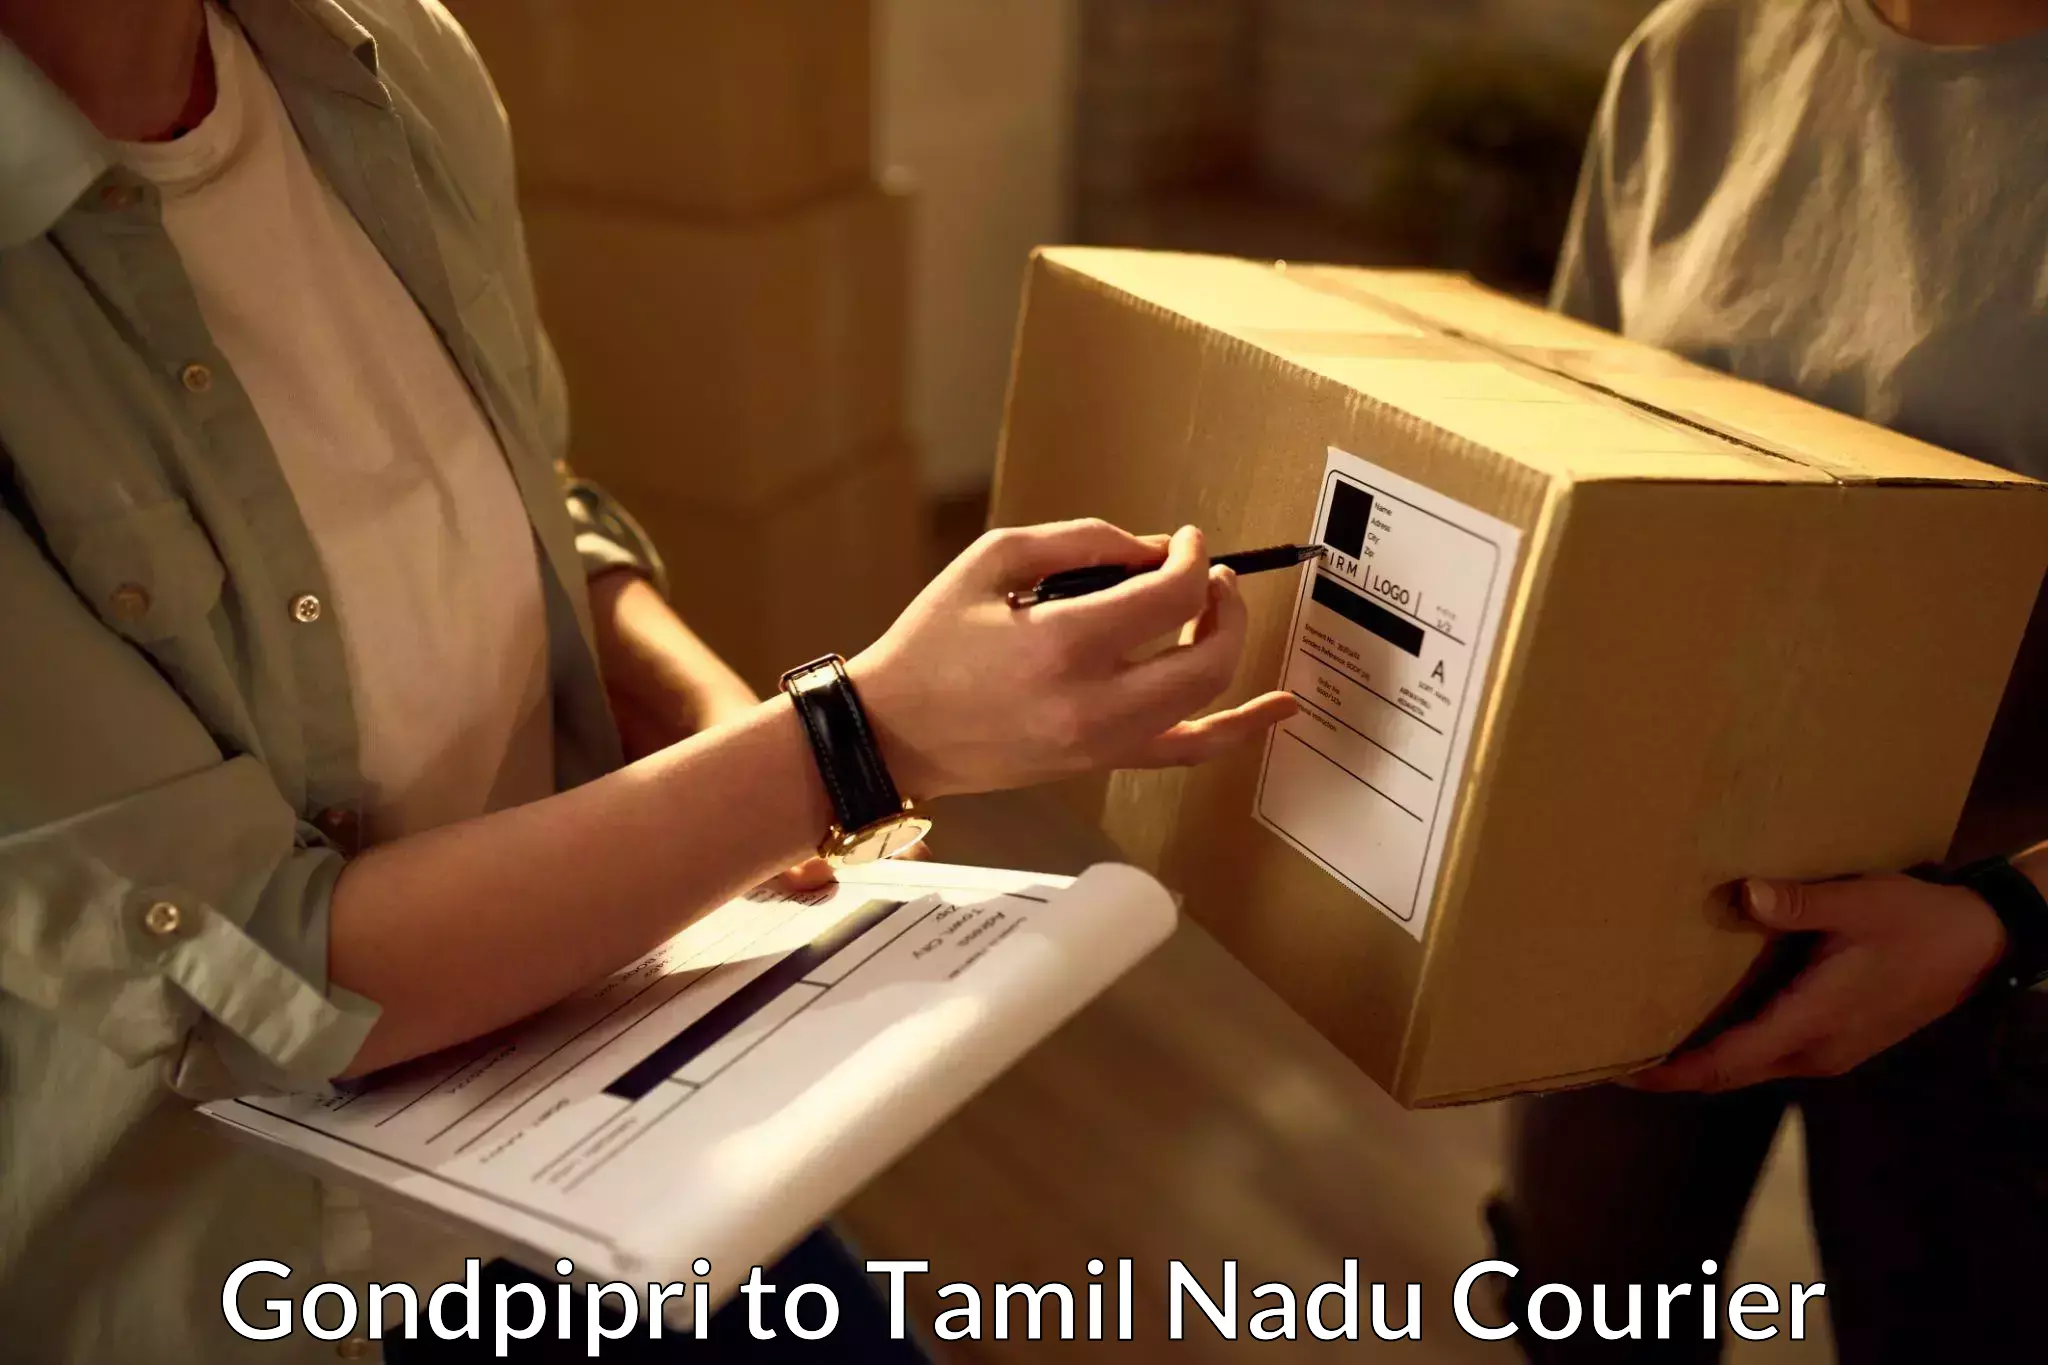 Comprehensive logistics Gondpipri to Cuddalore